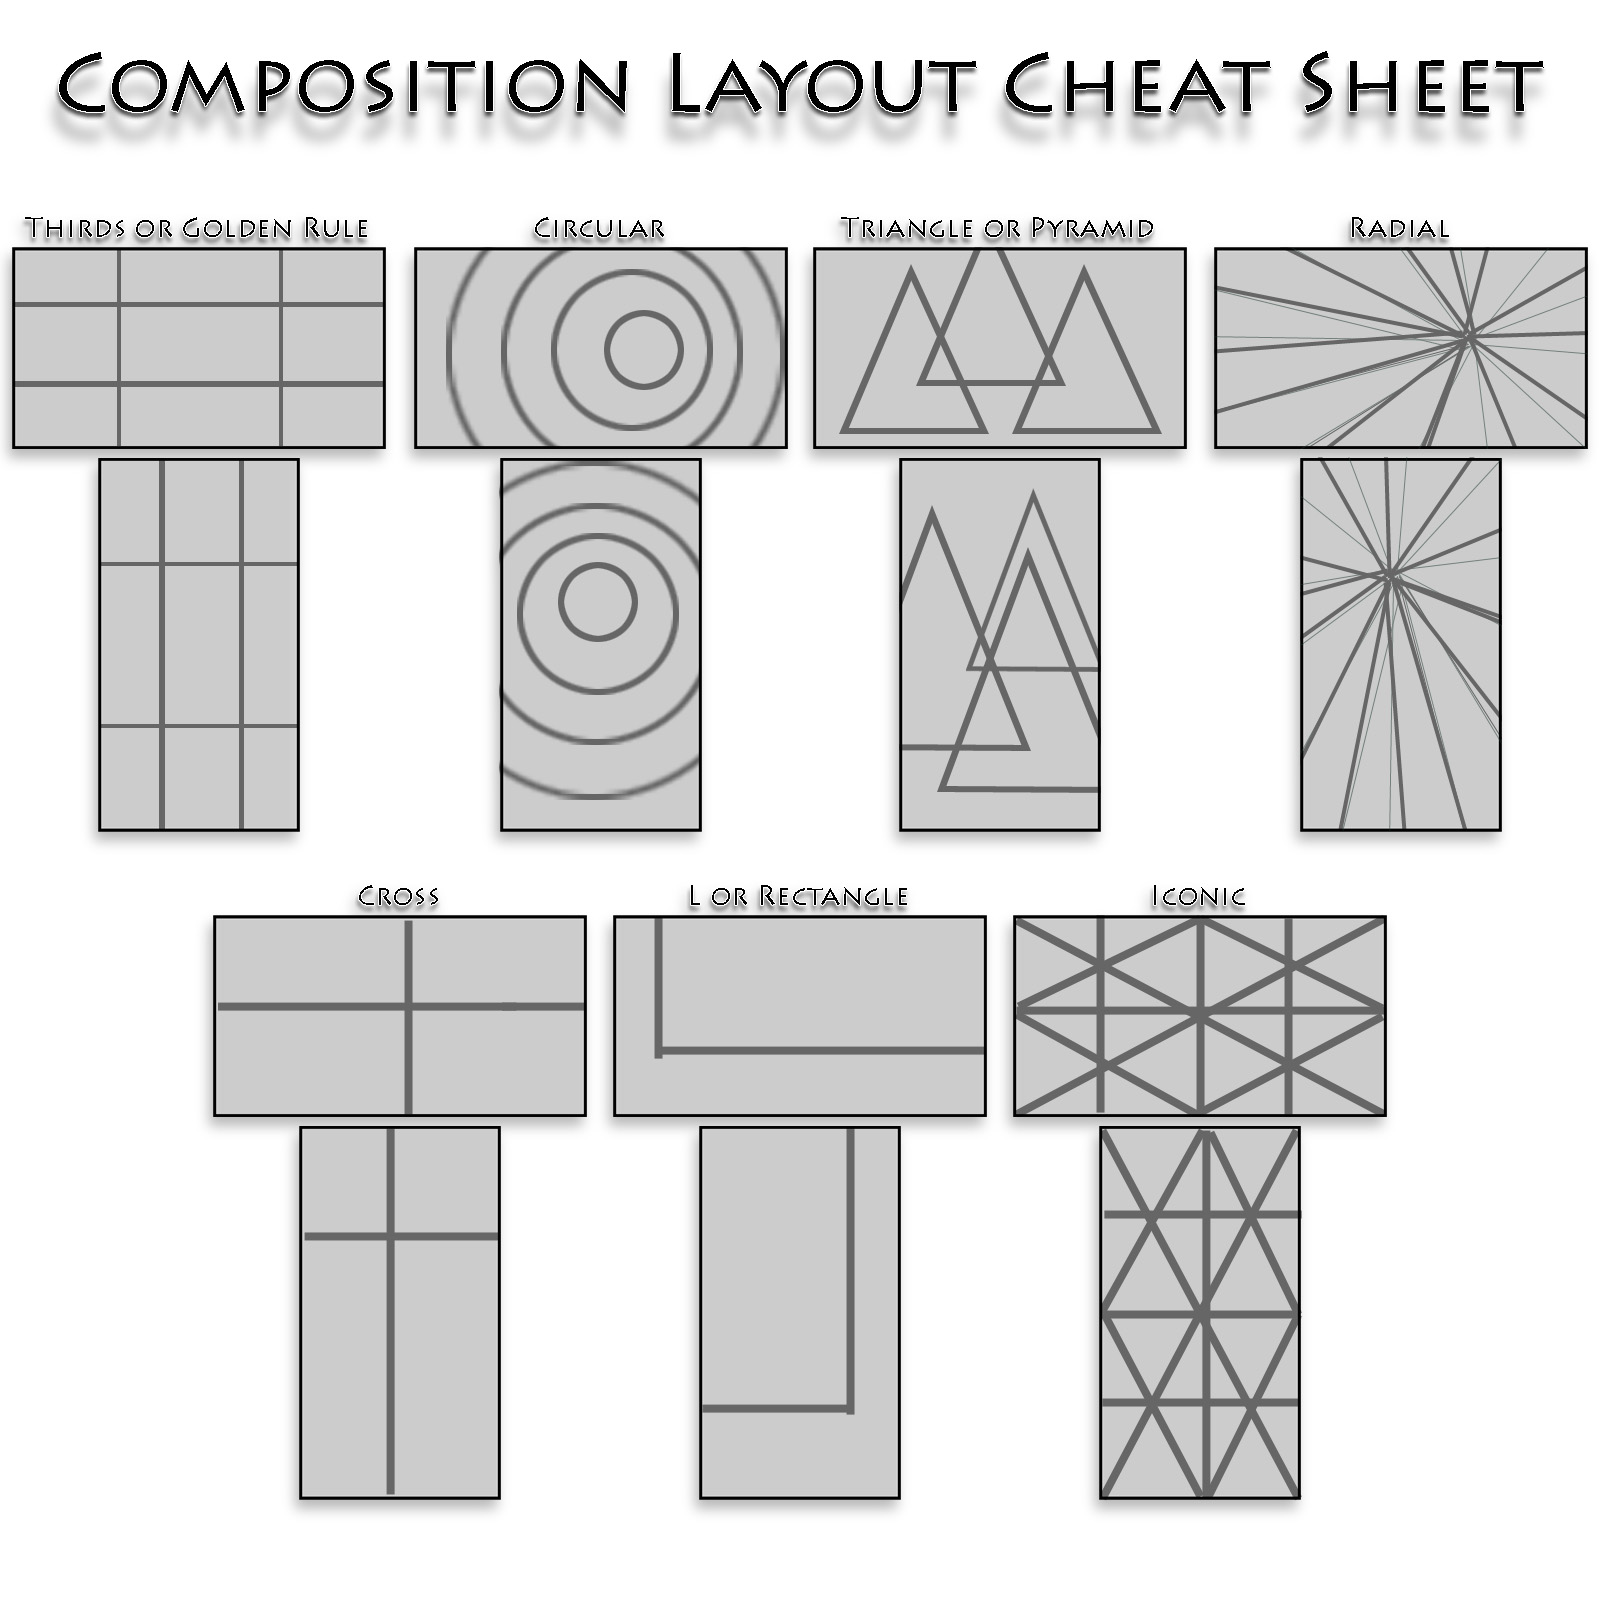 [Composition_Cheat_Sheet.jpg]